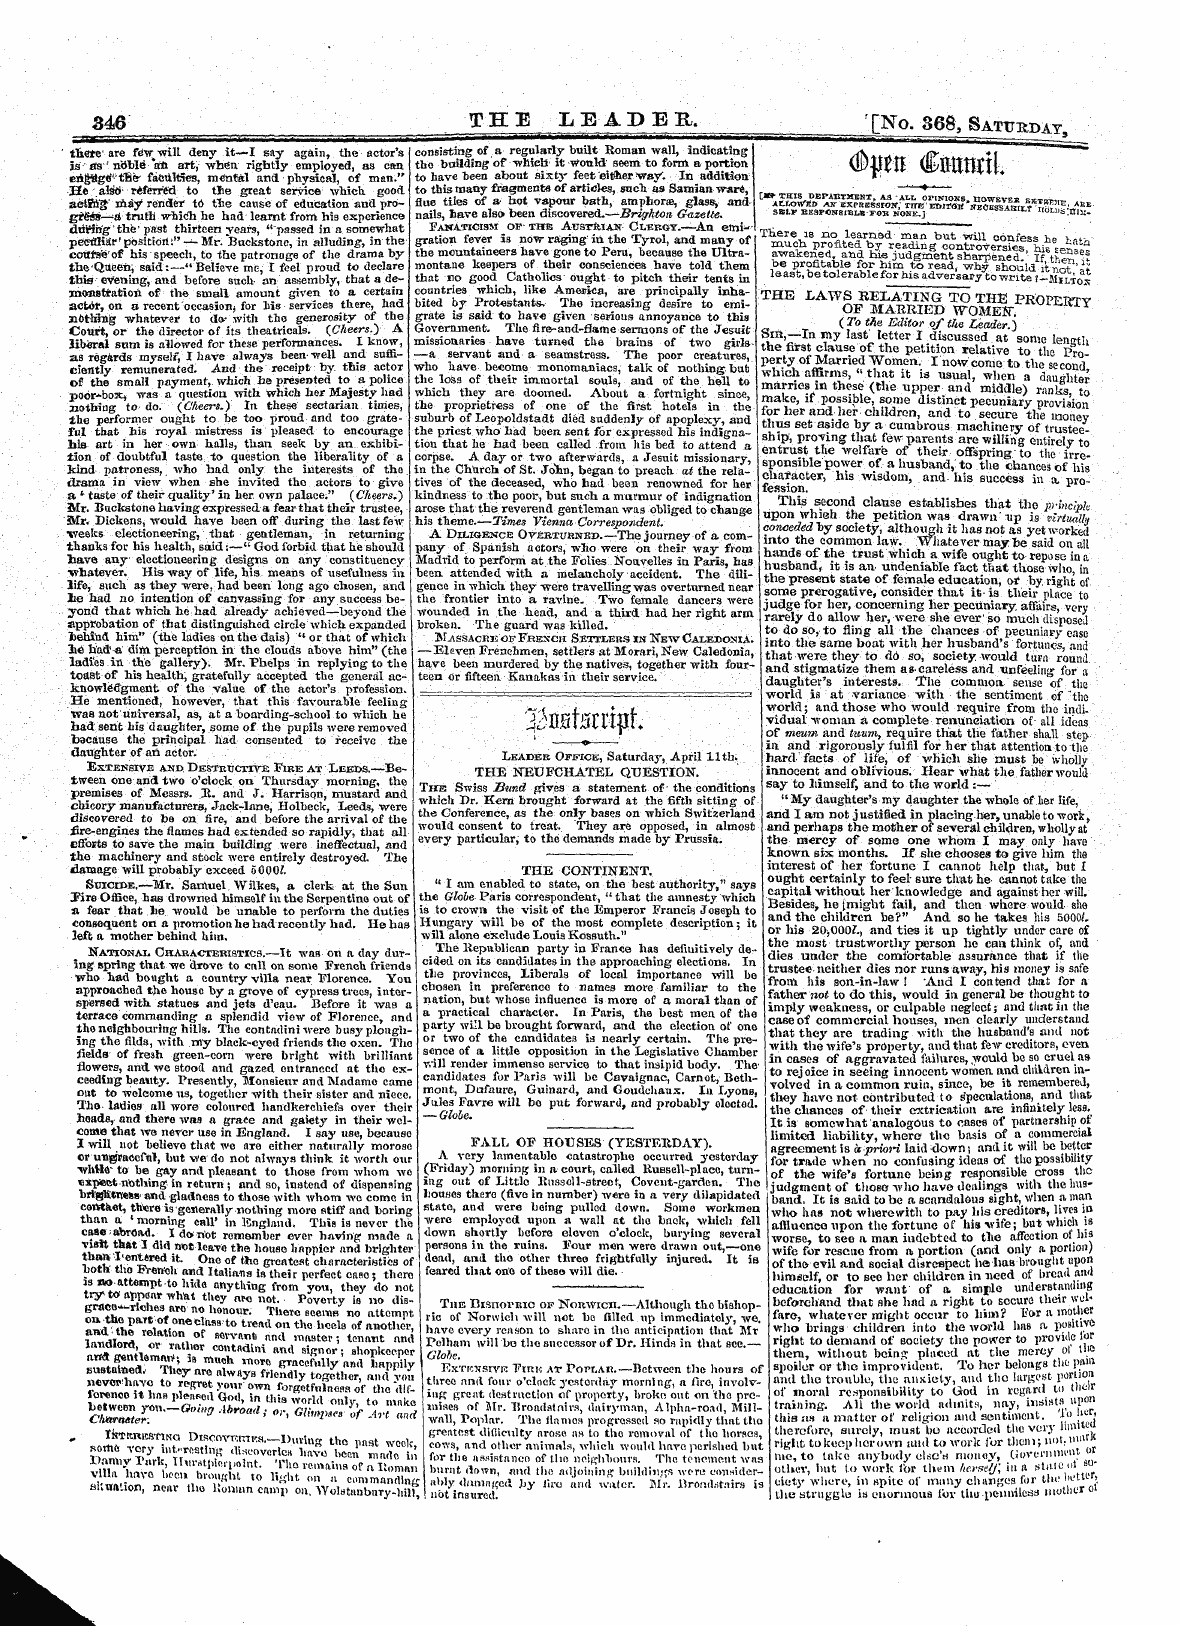 Leader (1850-1860): jS F Y, 1st edition - '""¦ *&Lt; R ? Jr ' ^Ismhxxwr ^Wwu^W